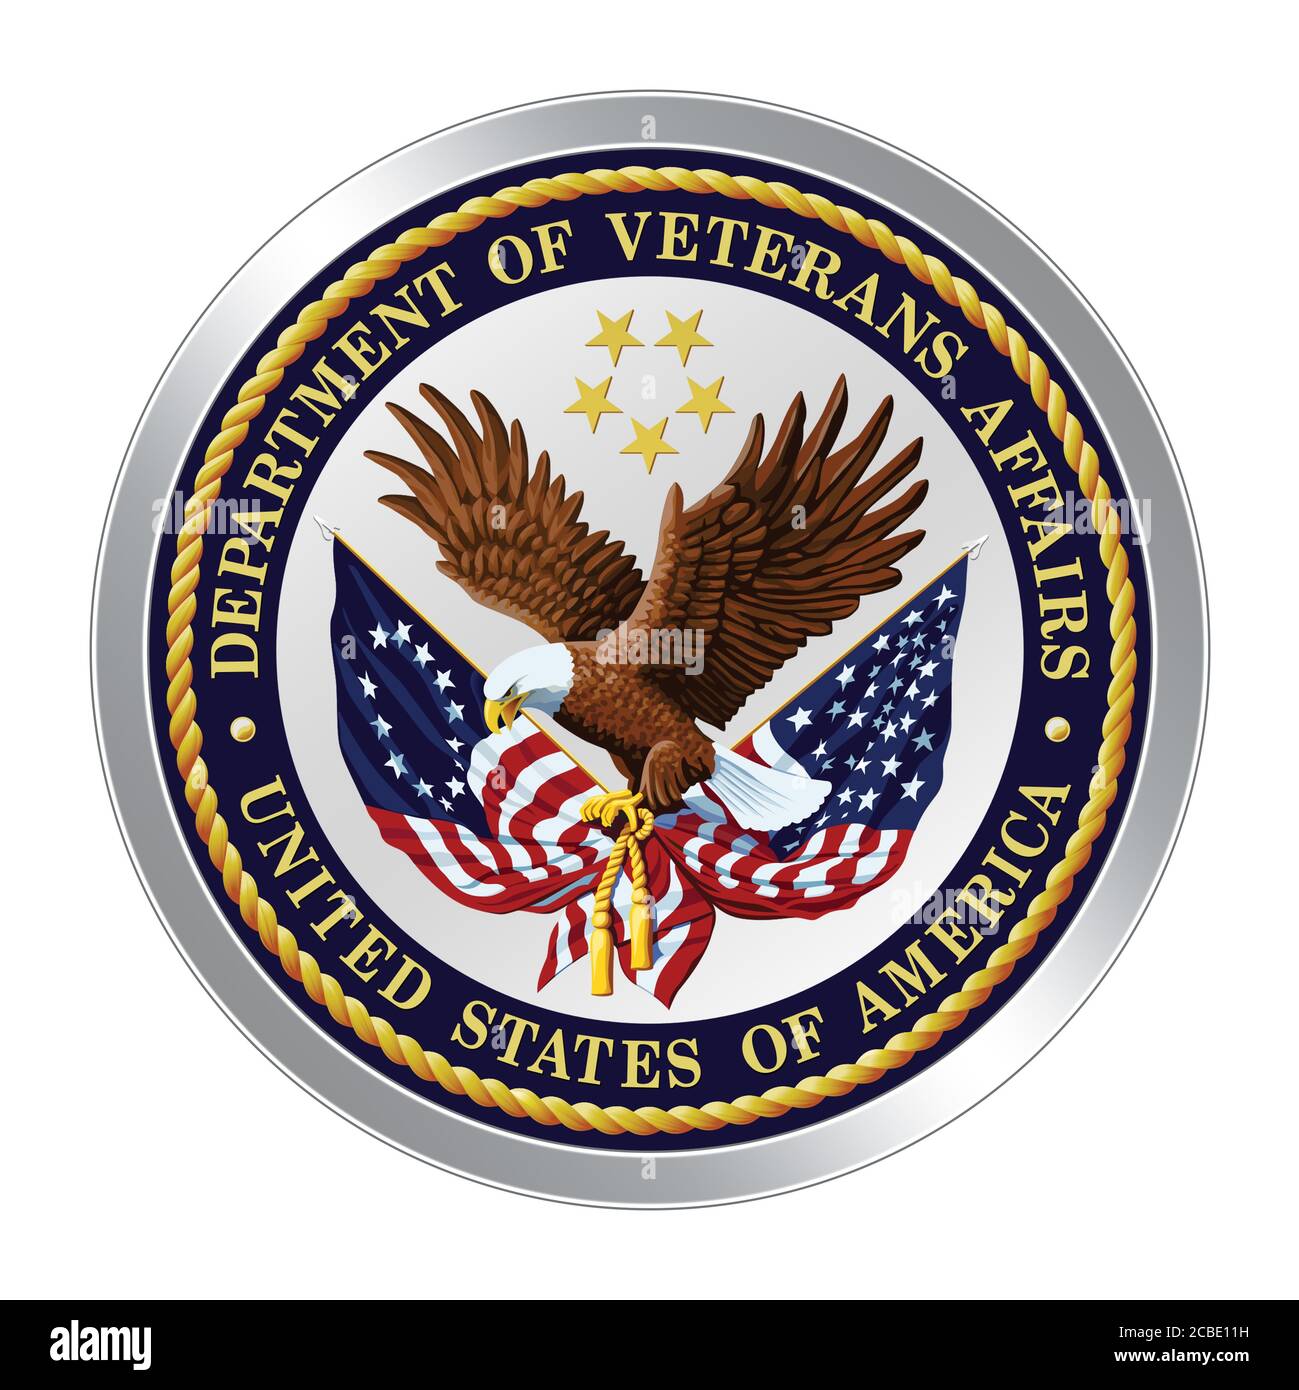 United States Department of Veterans Affairs VA Stock Photo